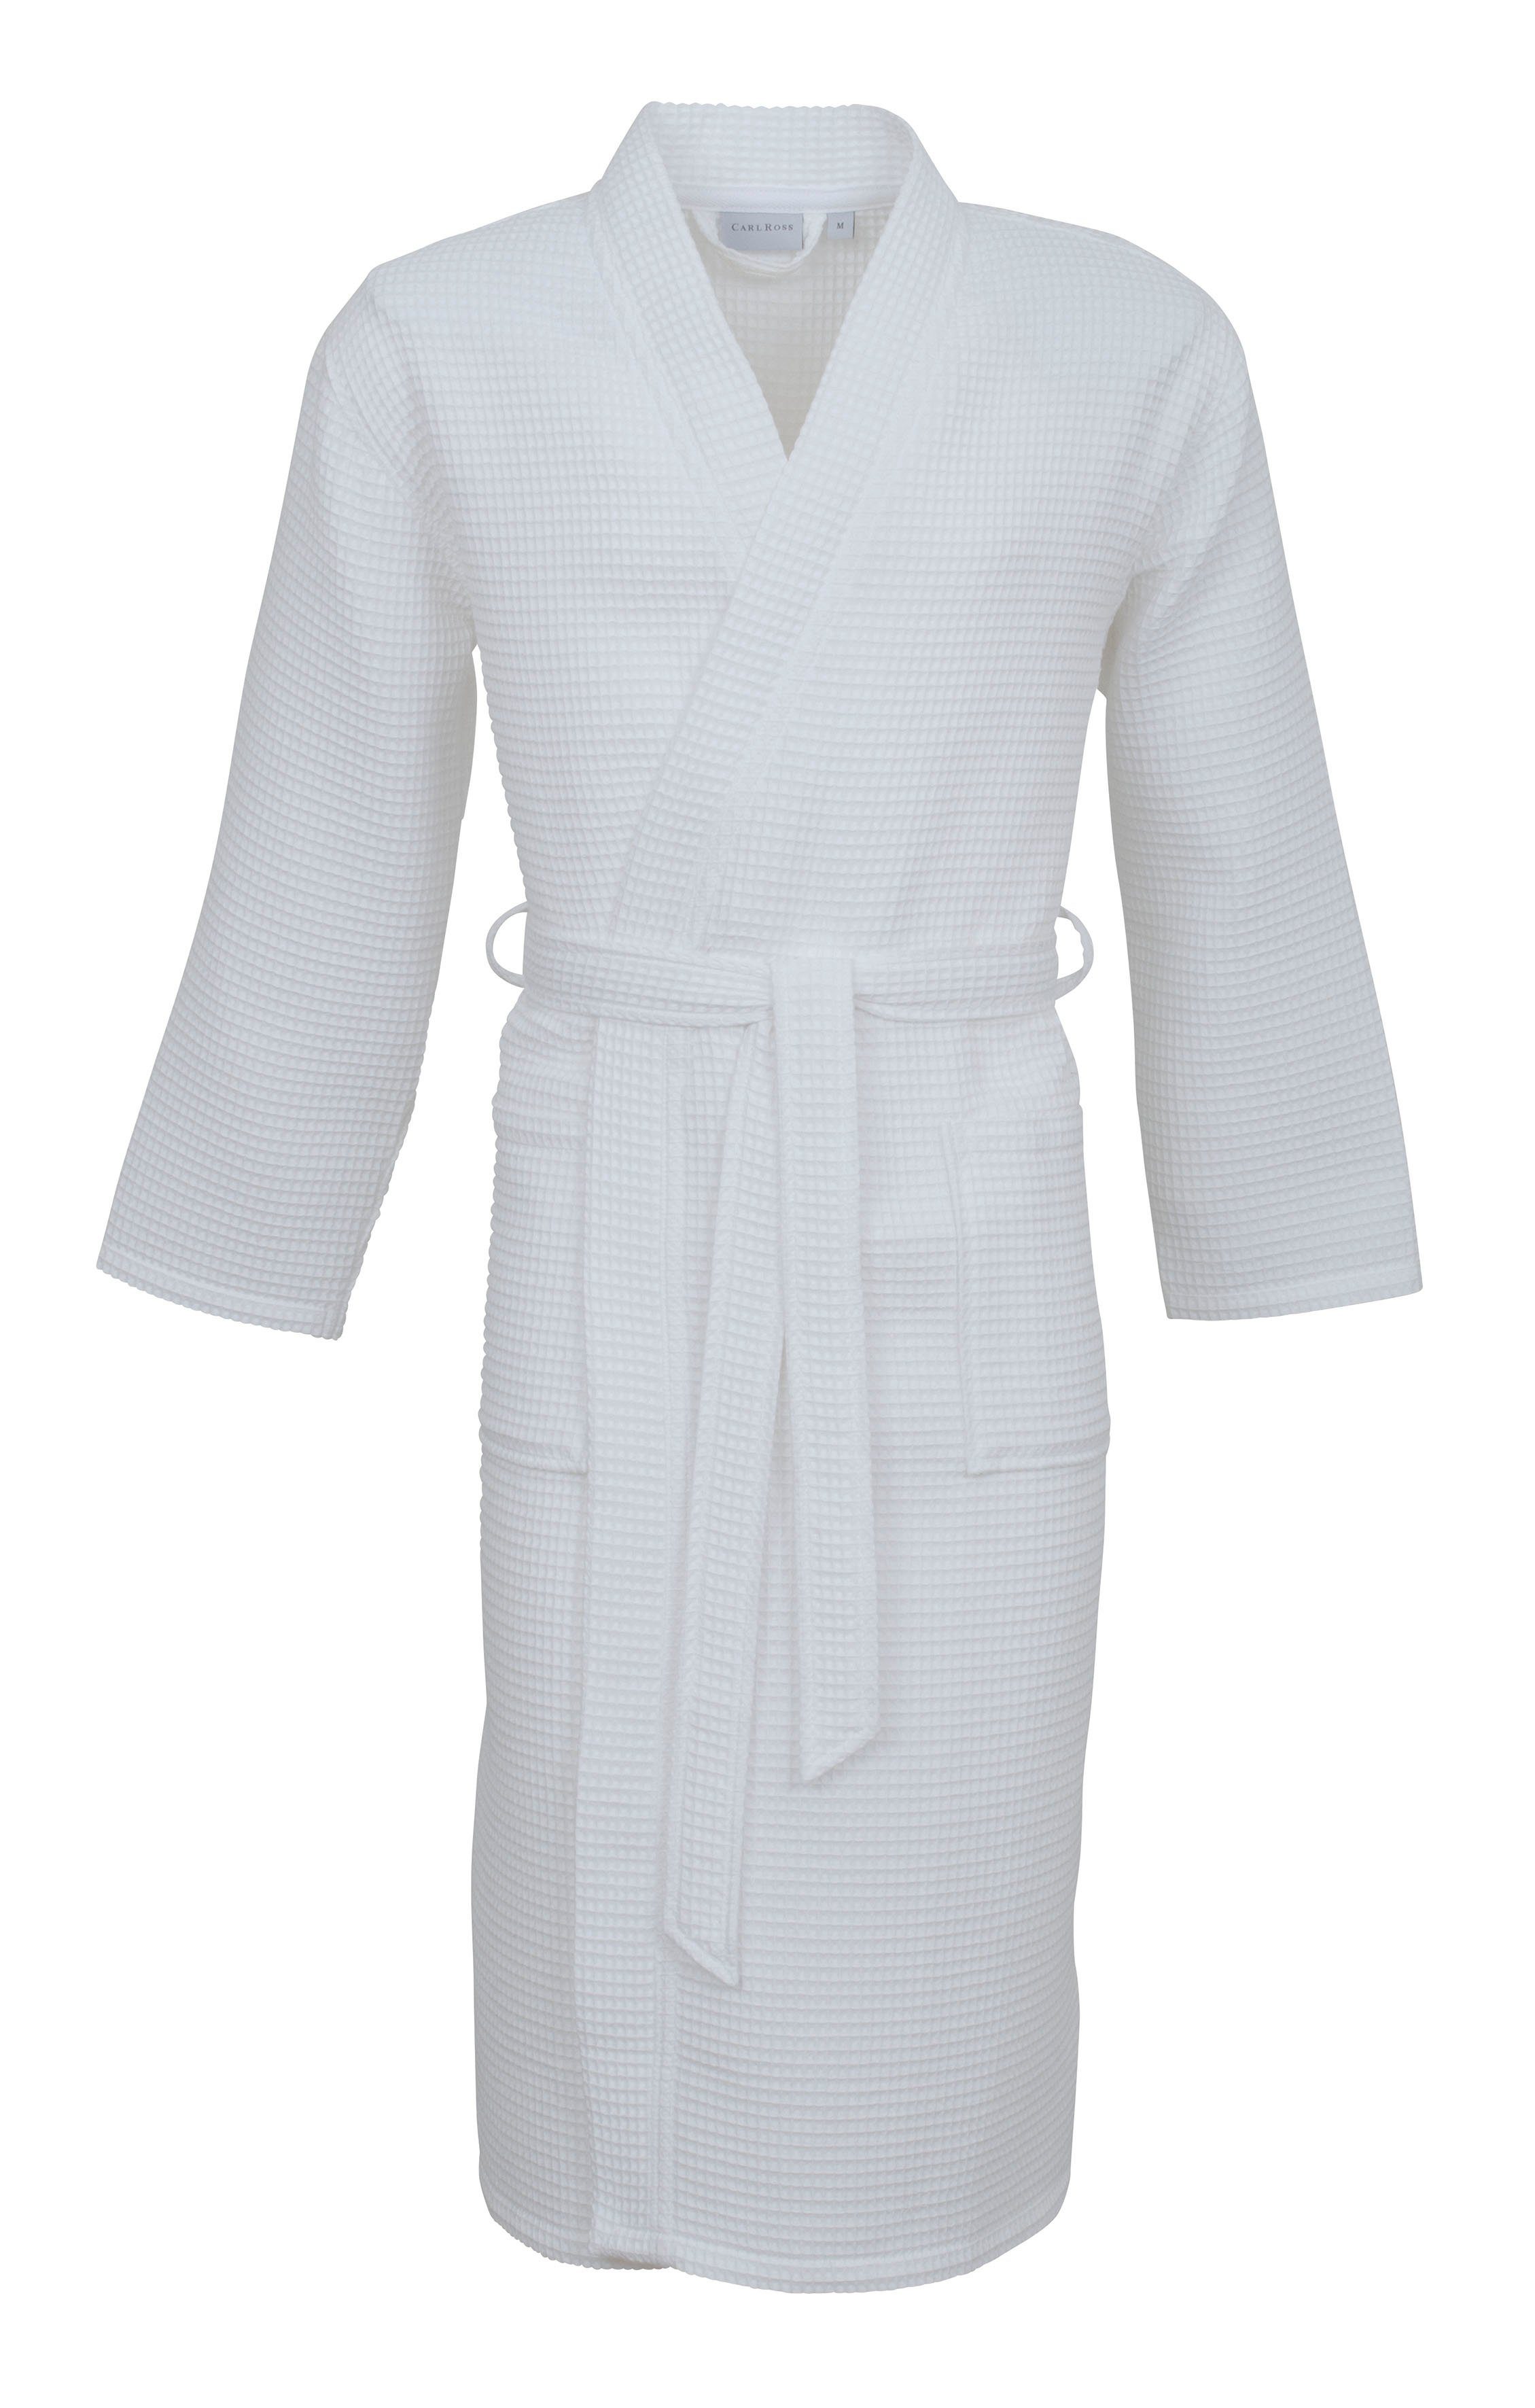 Gürtel, Unisex-Bademantel Waffelpique Baumwolle, white Langform, Kimono-Kragen, 25100, Ross Carl